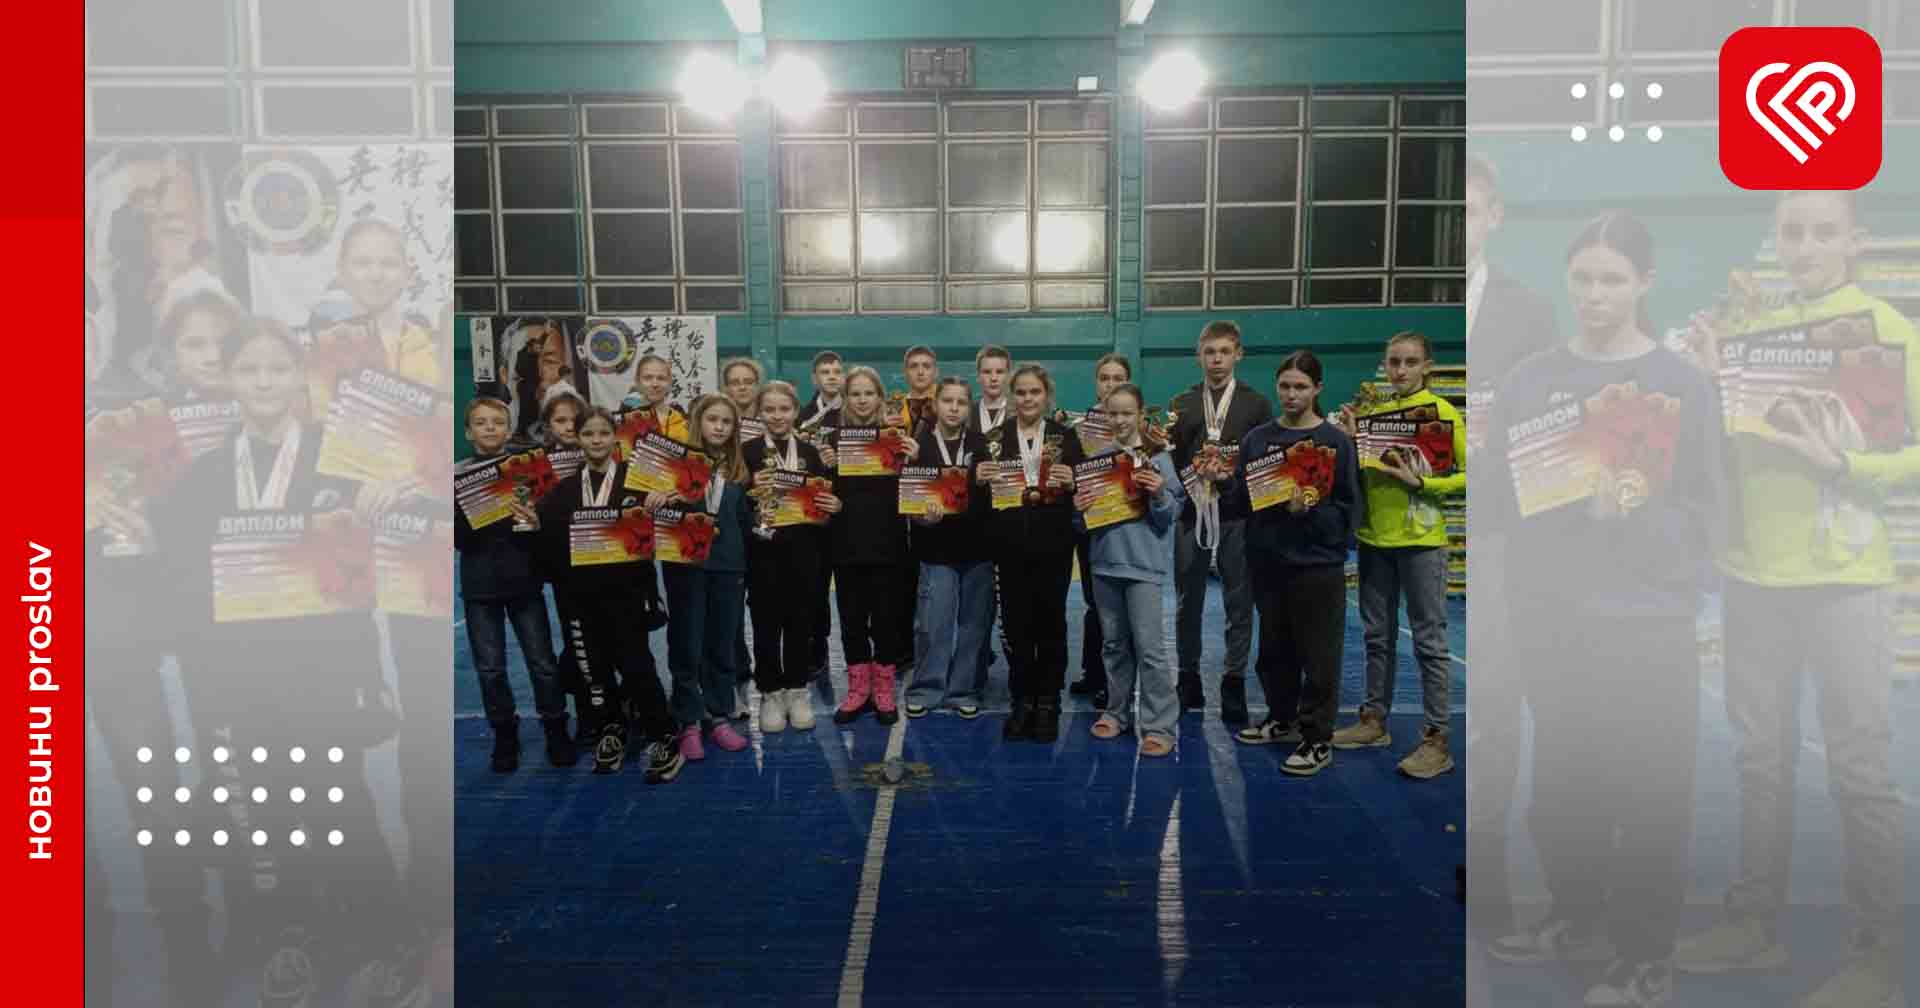 Вихованці переяславського СК «АКУЛА» вибороли 34 медалі на Відкритому Кубку Обухова з таеквон-до